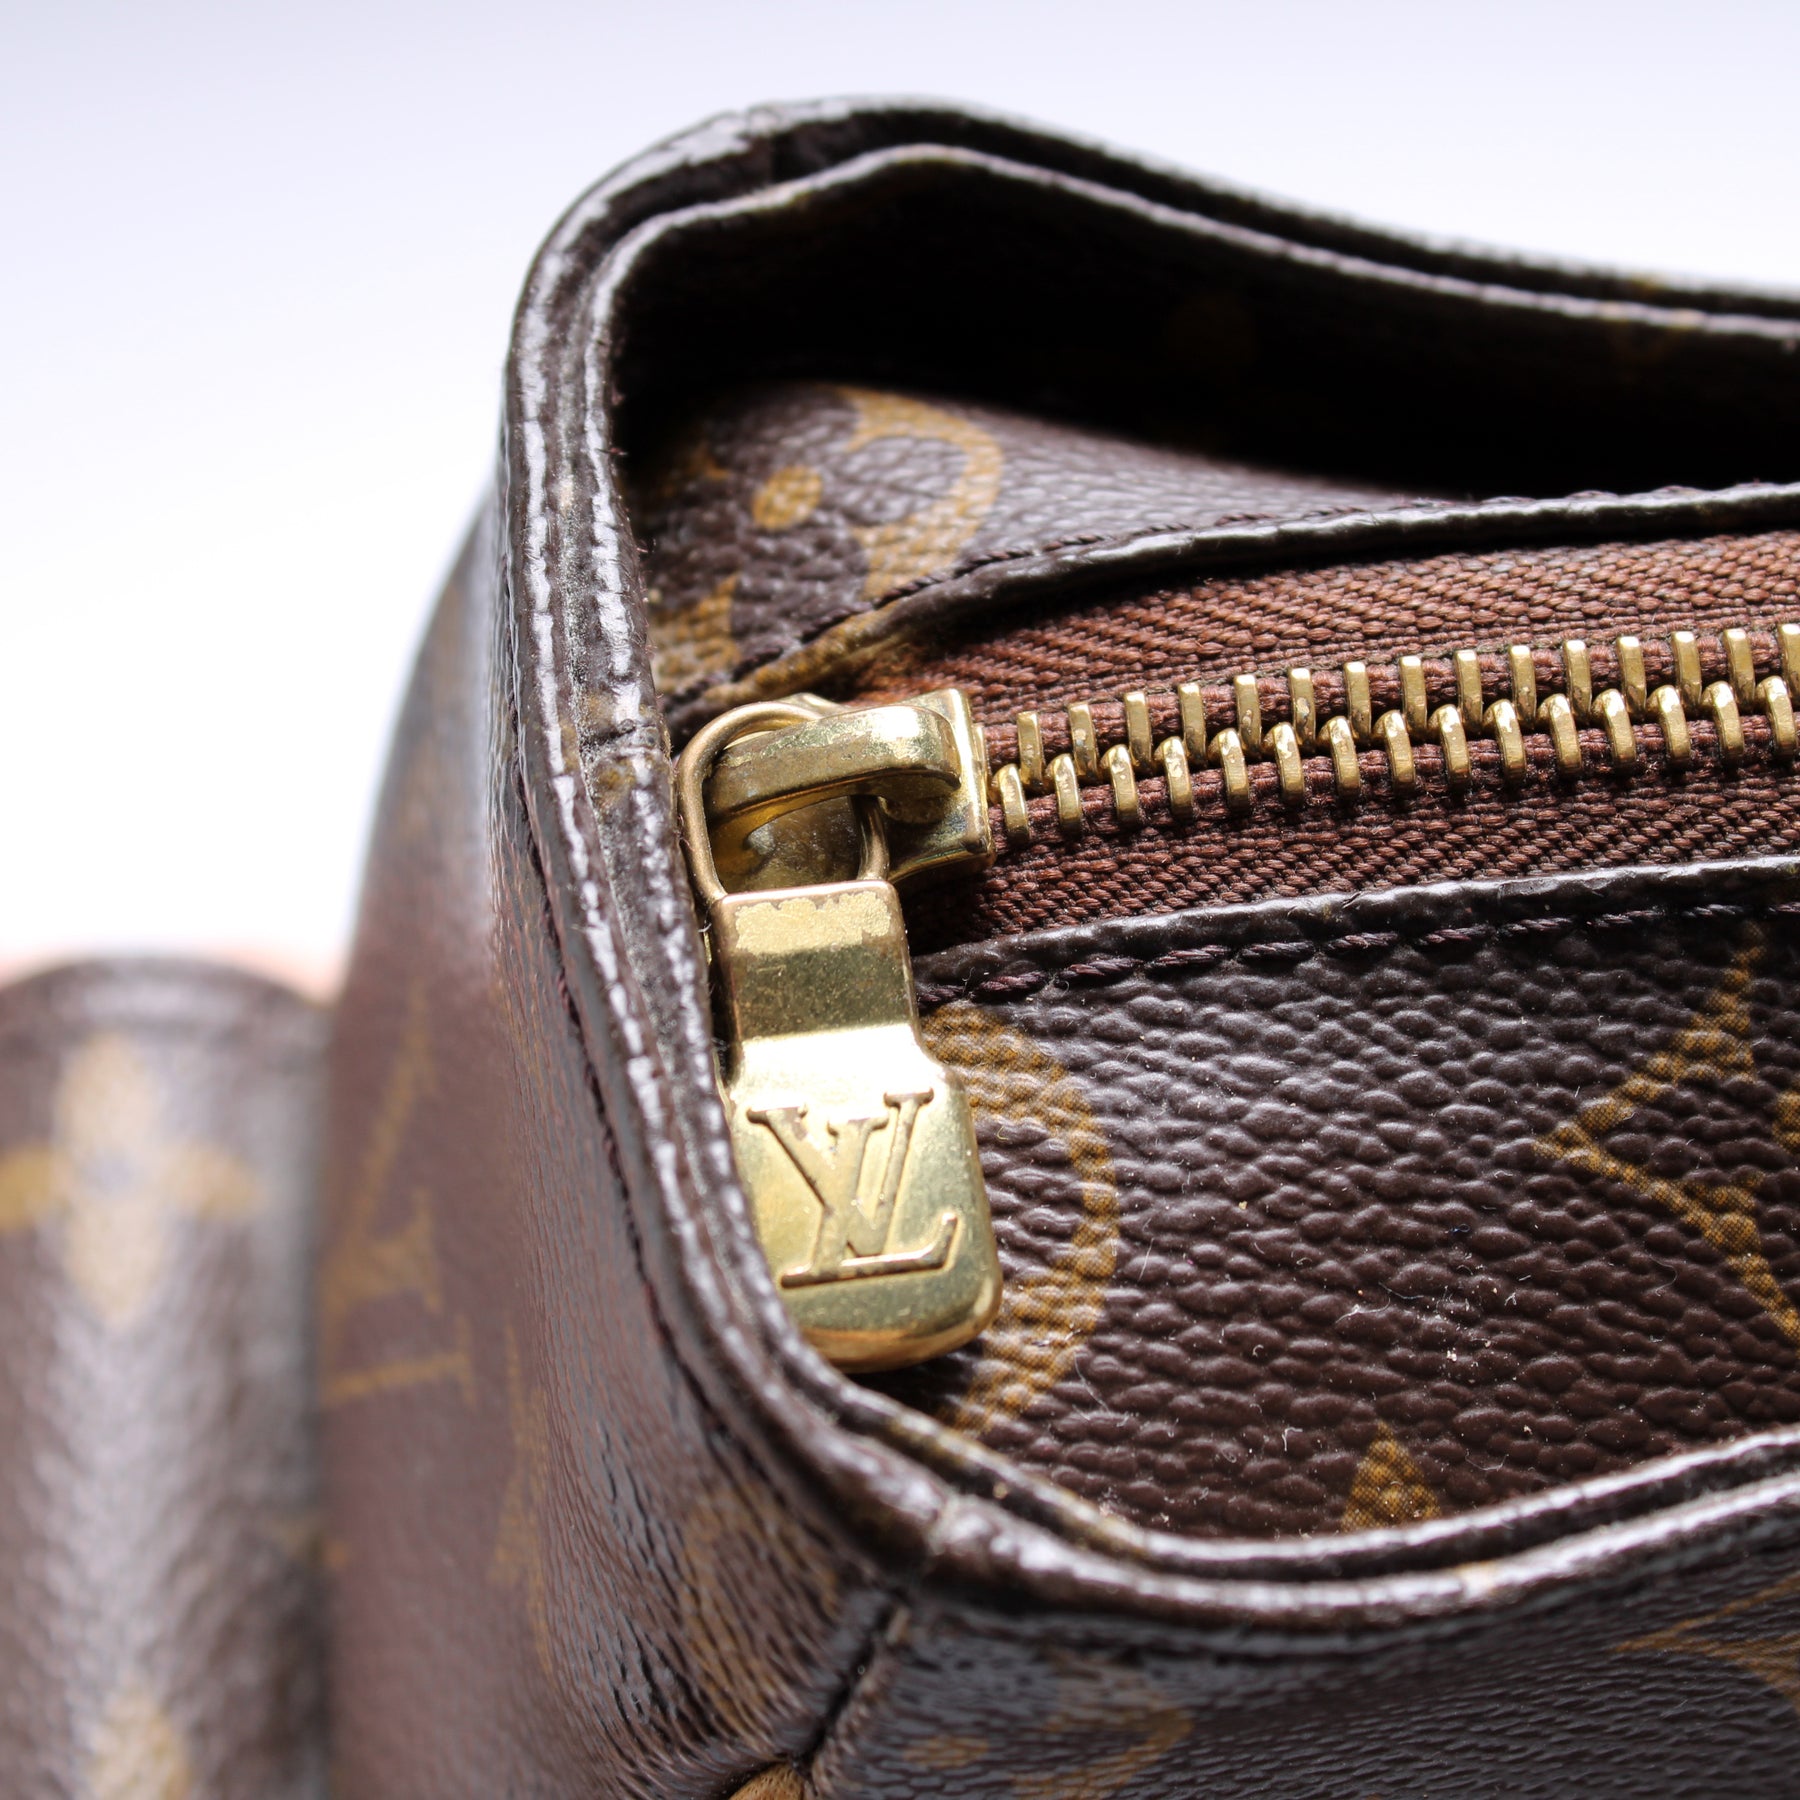 Multipli Cite Monogram – Keeks Designer Handbags